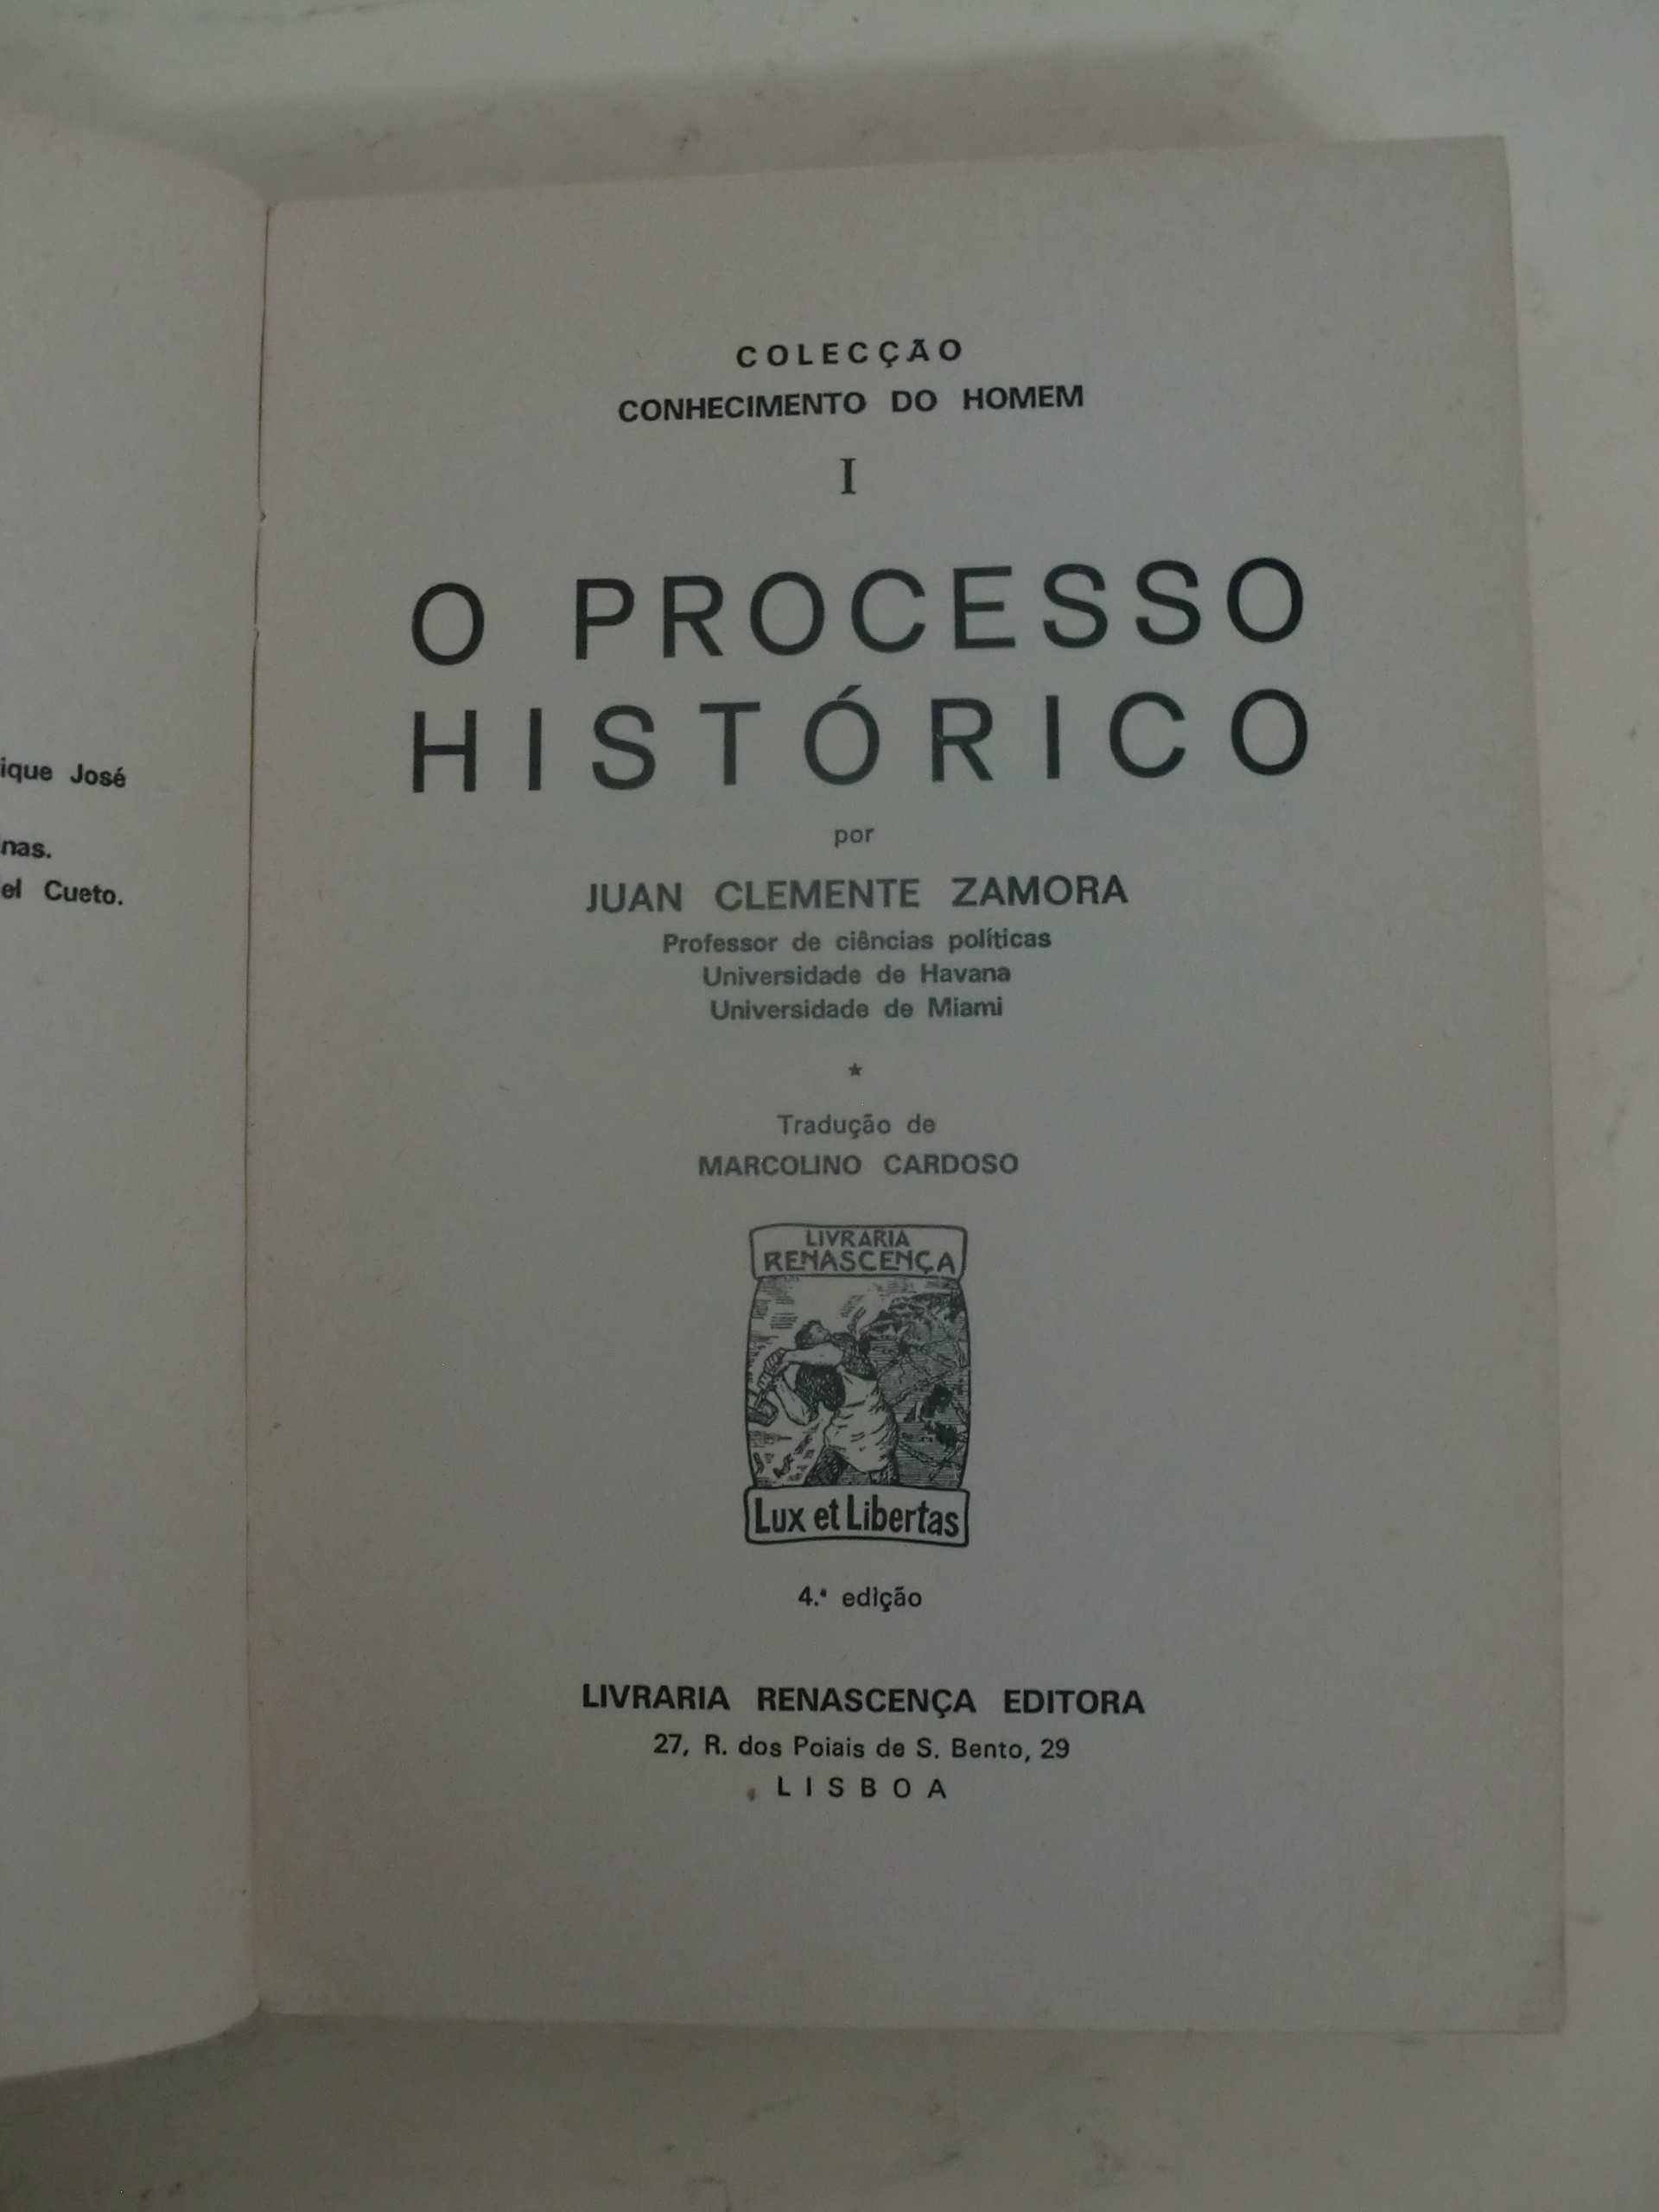 O Processo Histórico
por Juan Clemente Zamora